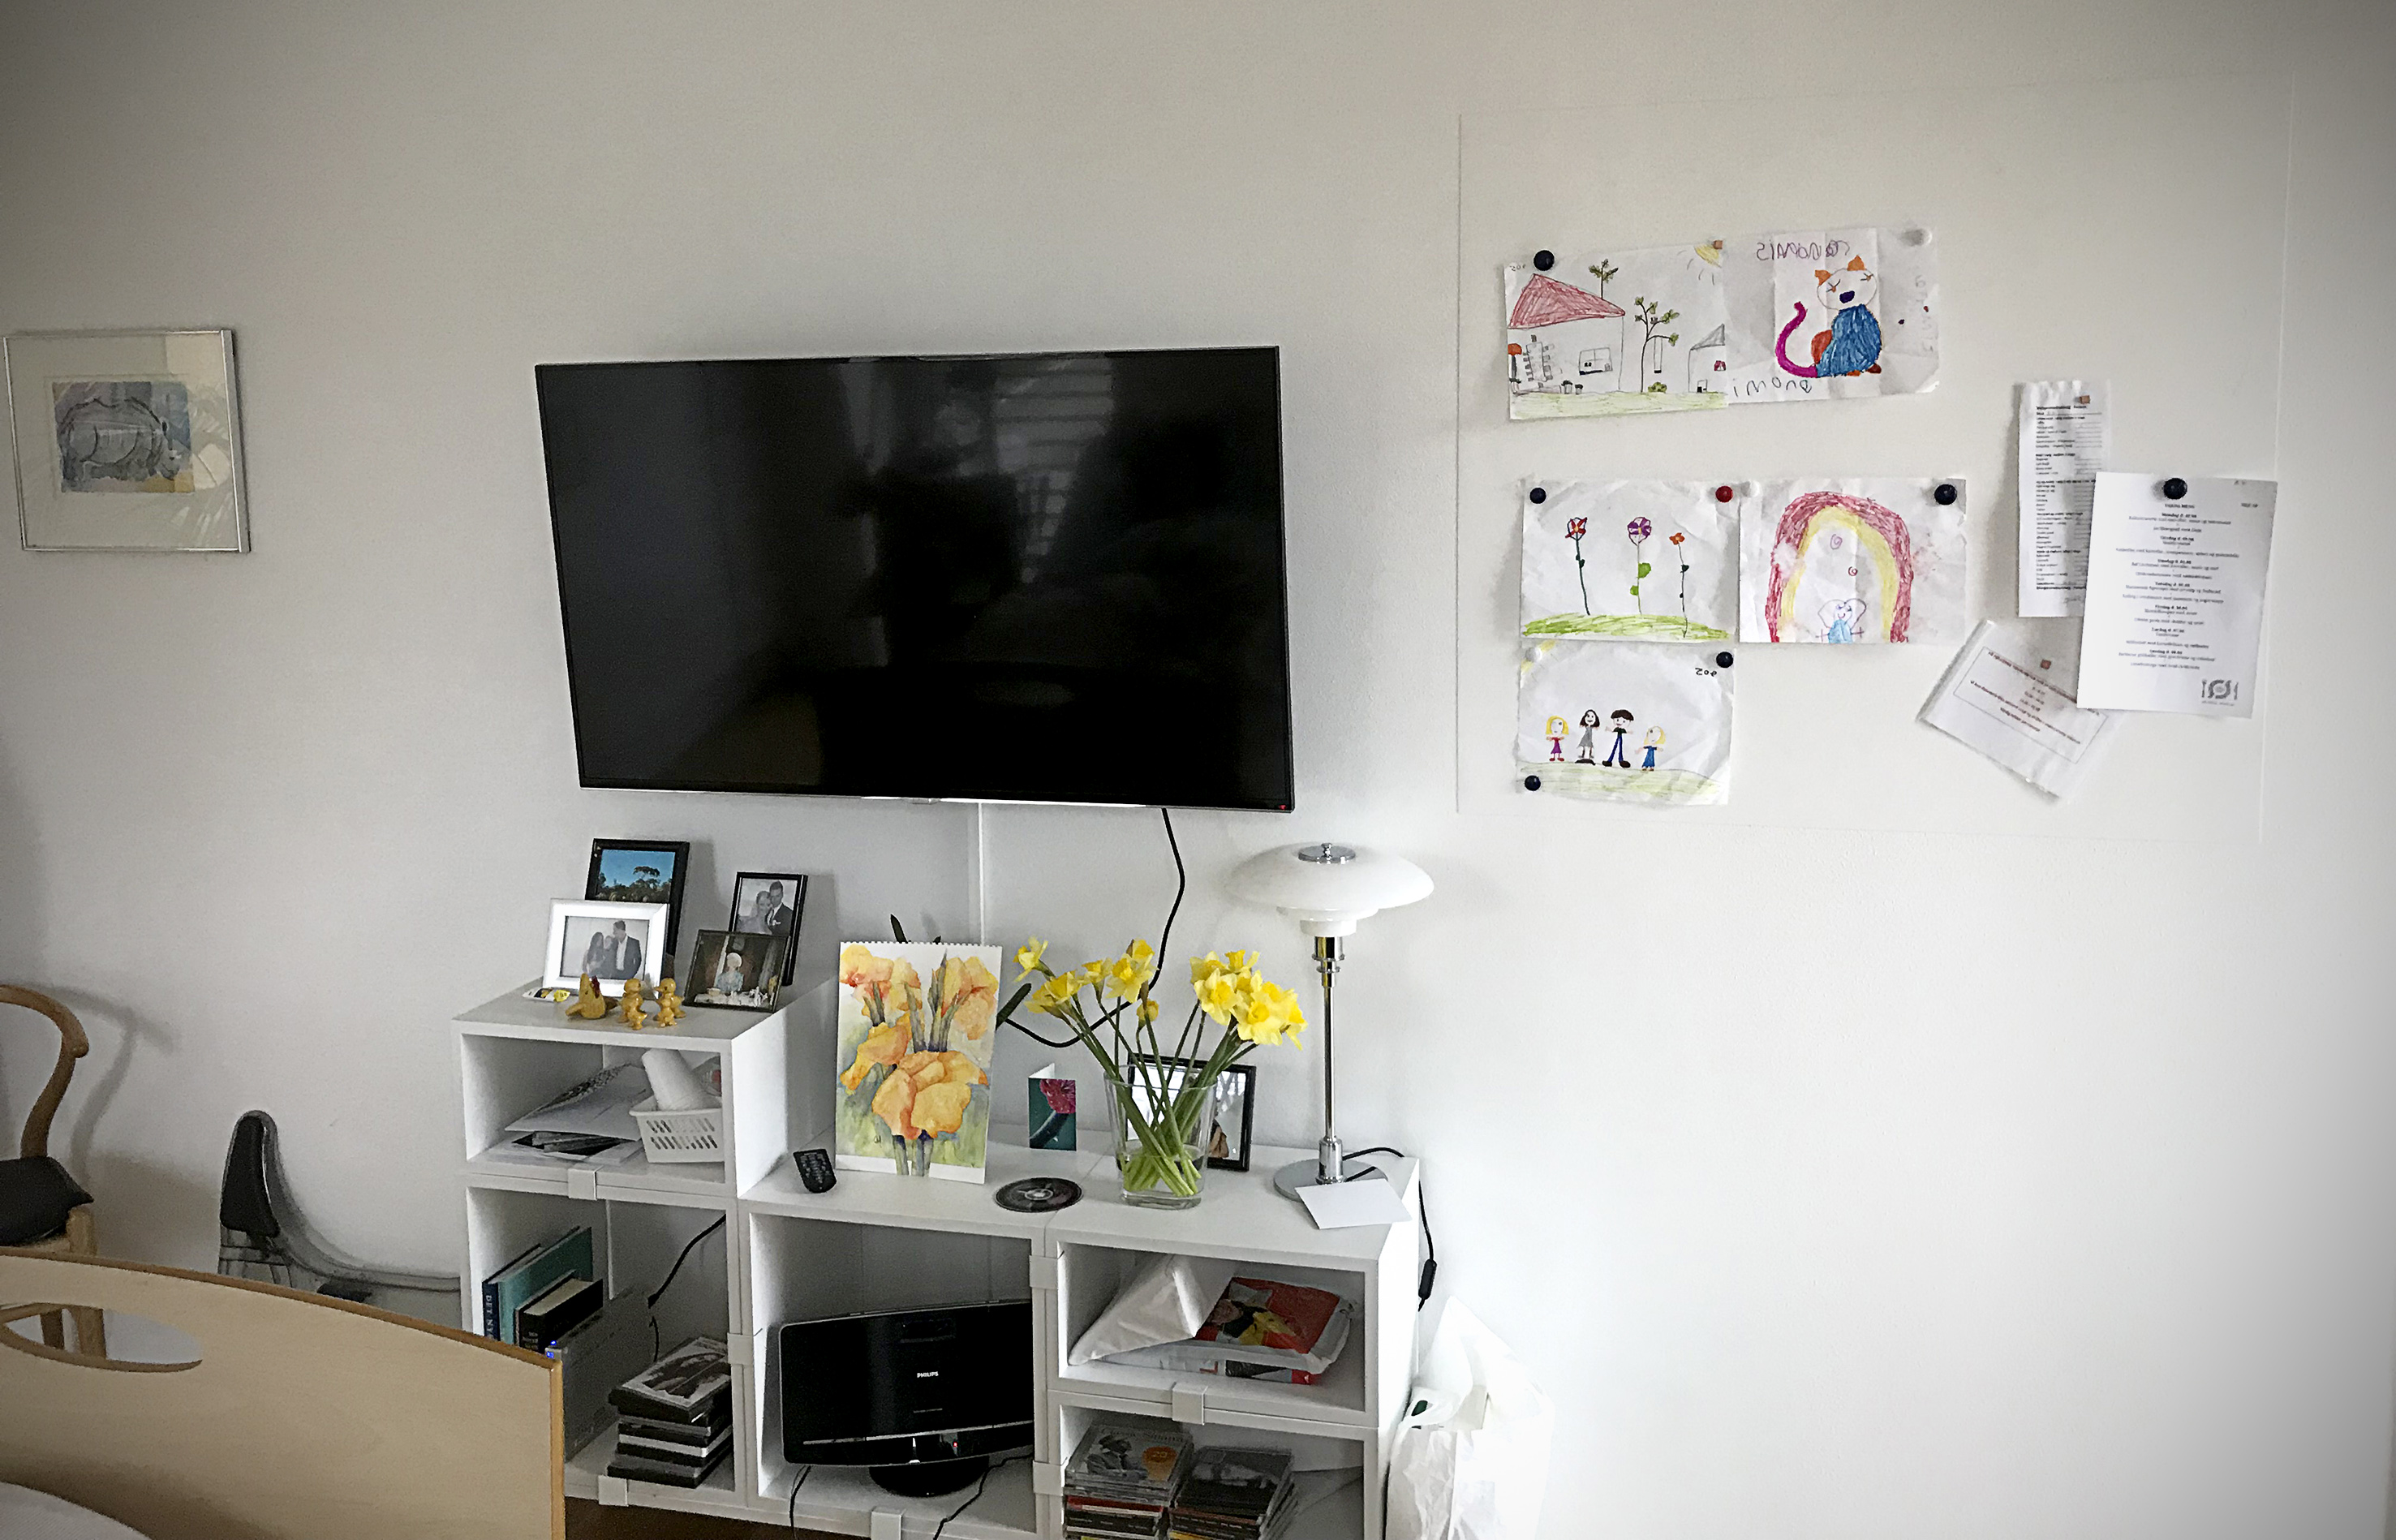 Billedet viser et fjernsyn med tegninger hængt op på væggen ved siden af.